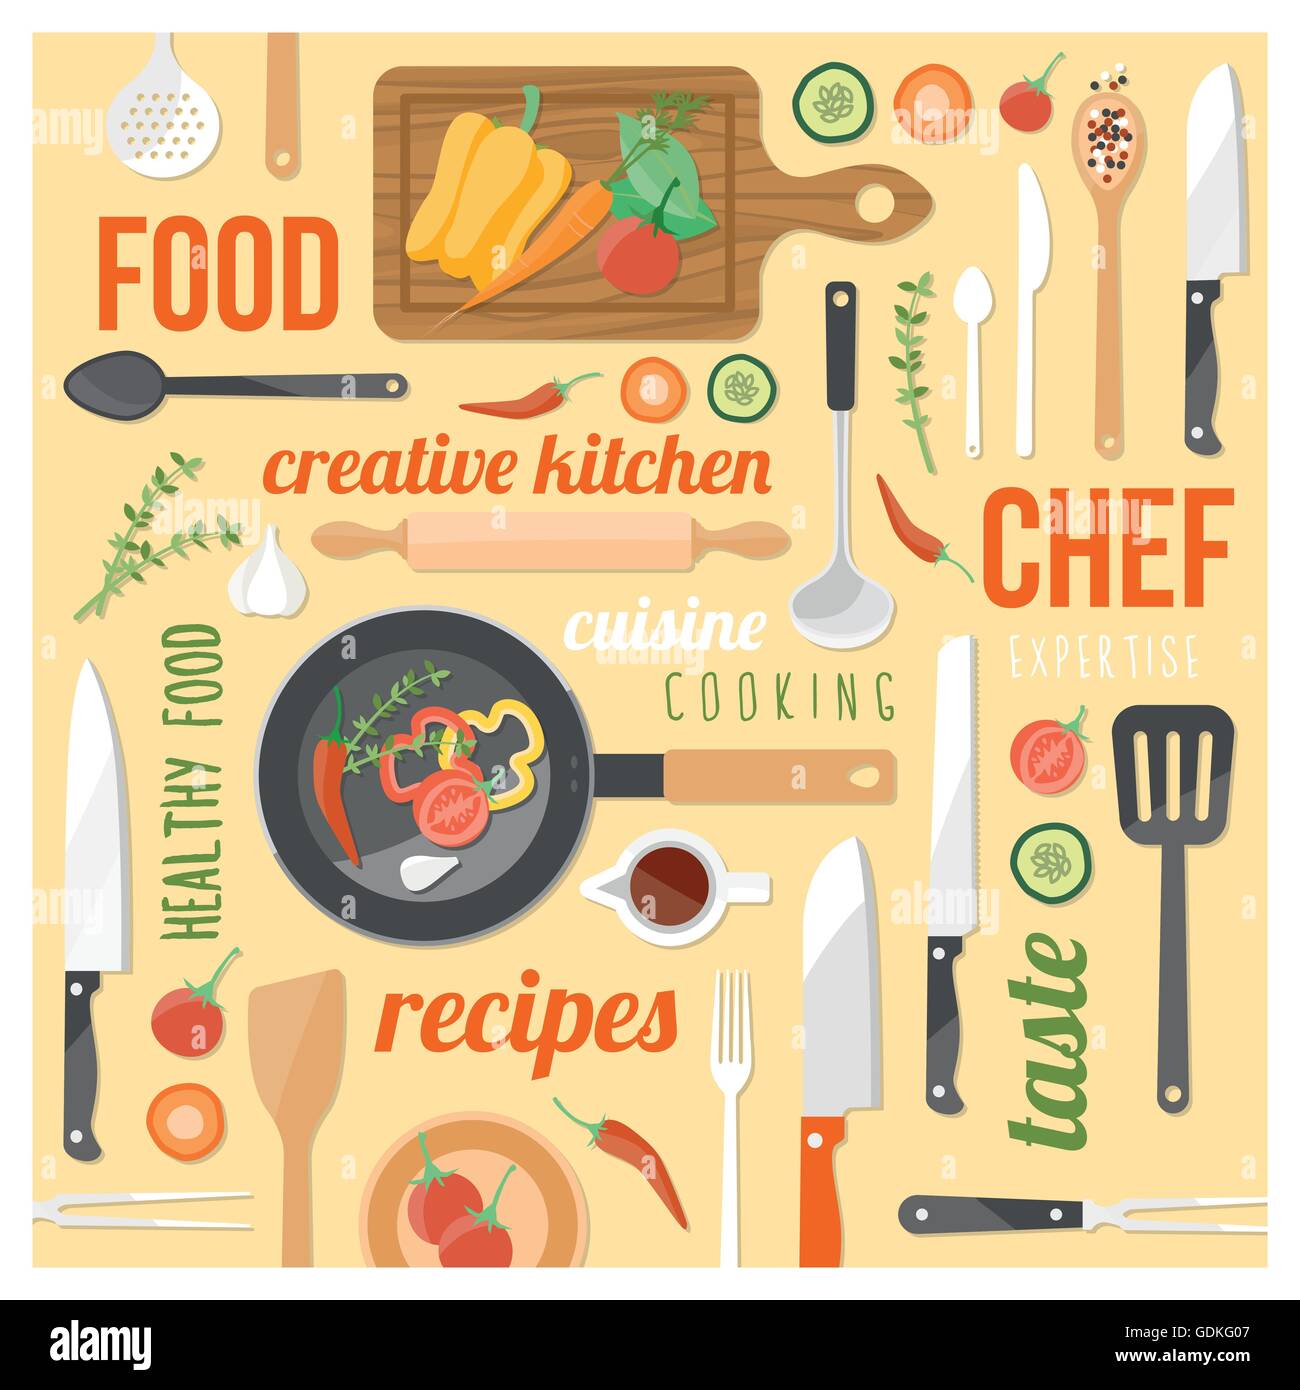 Cucina creativa con uno sfondo con utensili da cucina, degli ingredienti alimentari e parole su uno sfondo giallo in una cornice quadrata Illustrazione Vettoriale